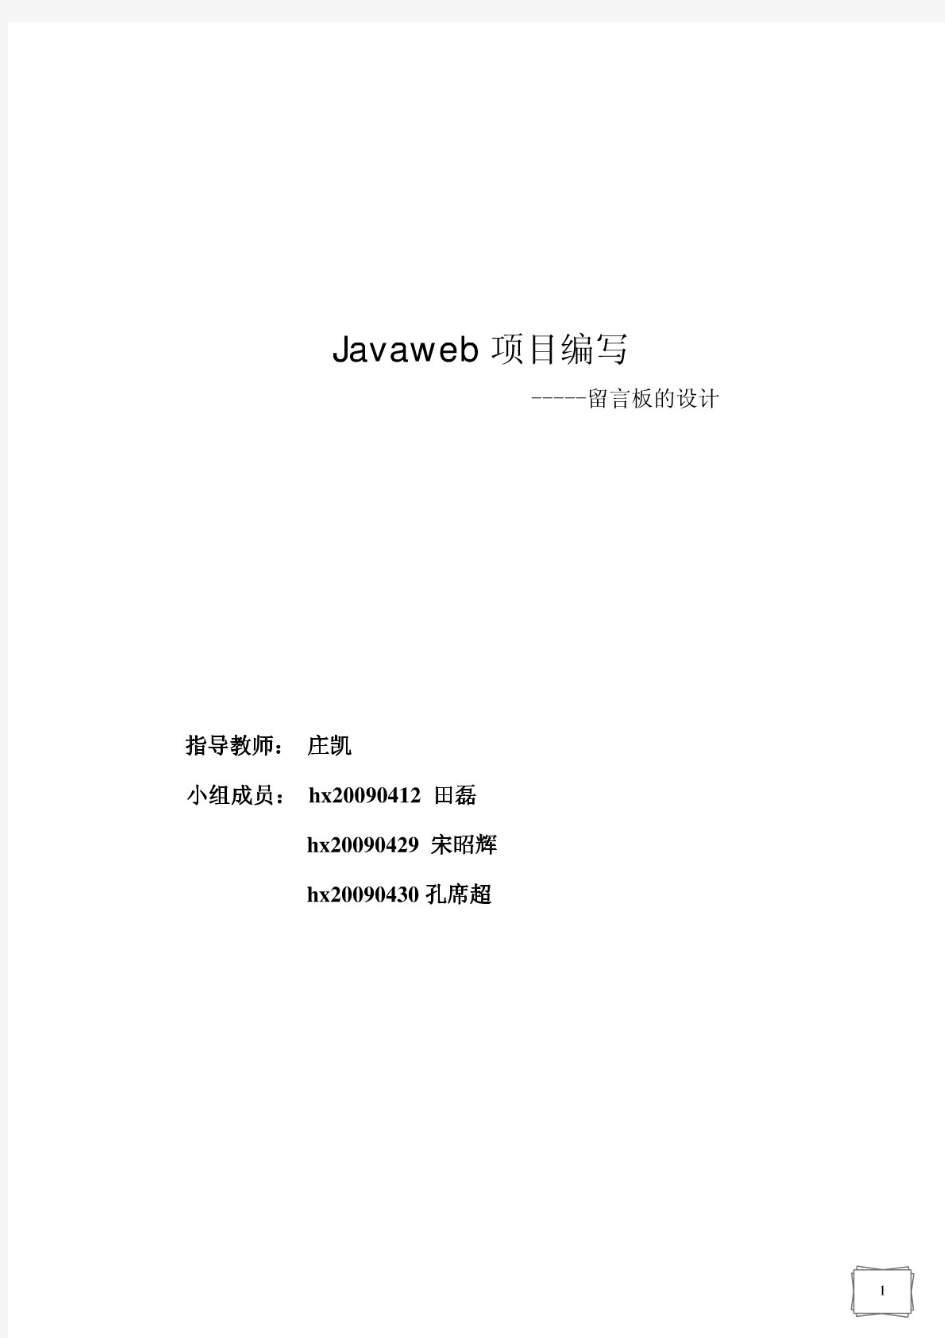 【精品】Javaweb项目实验报告